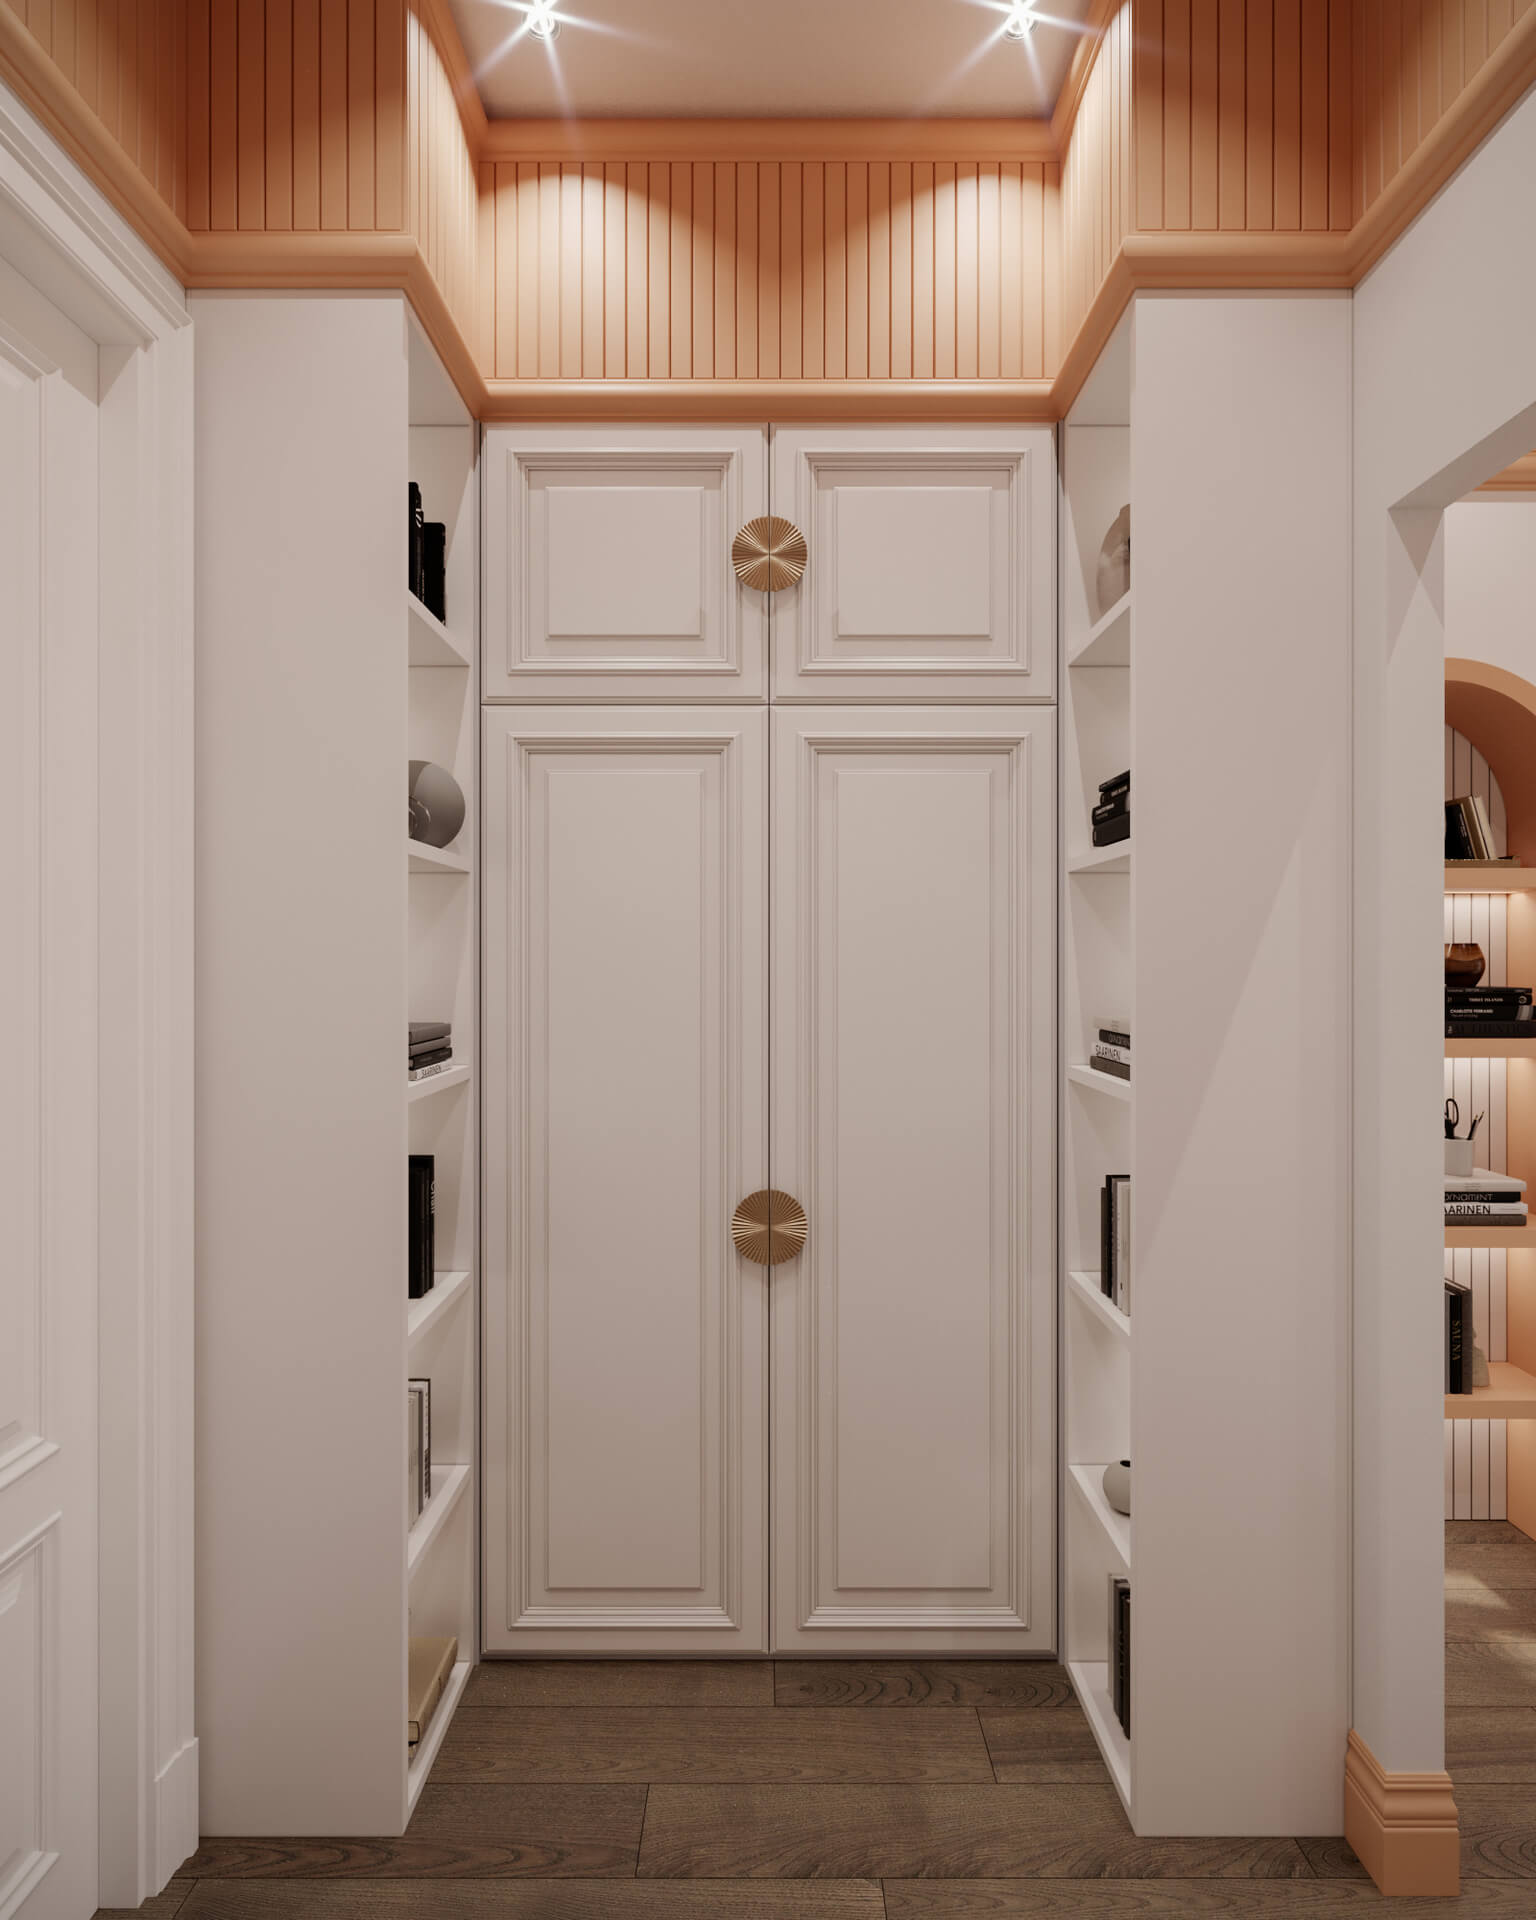  villa tasarım 5186 Dubleks Apartman Dairesi Tasarımı Konutlar